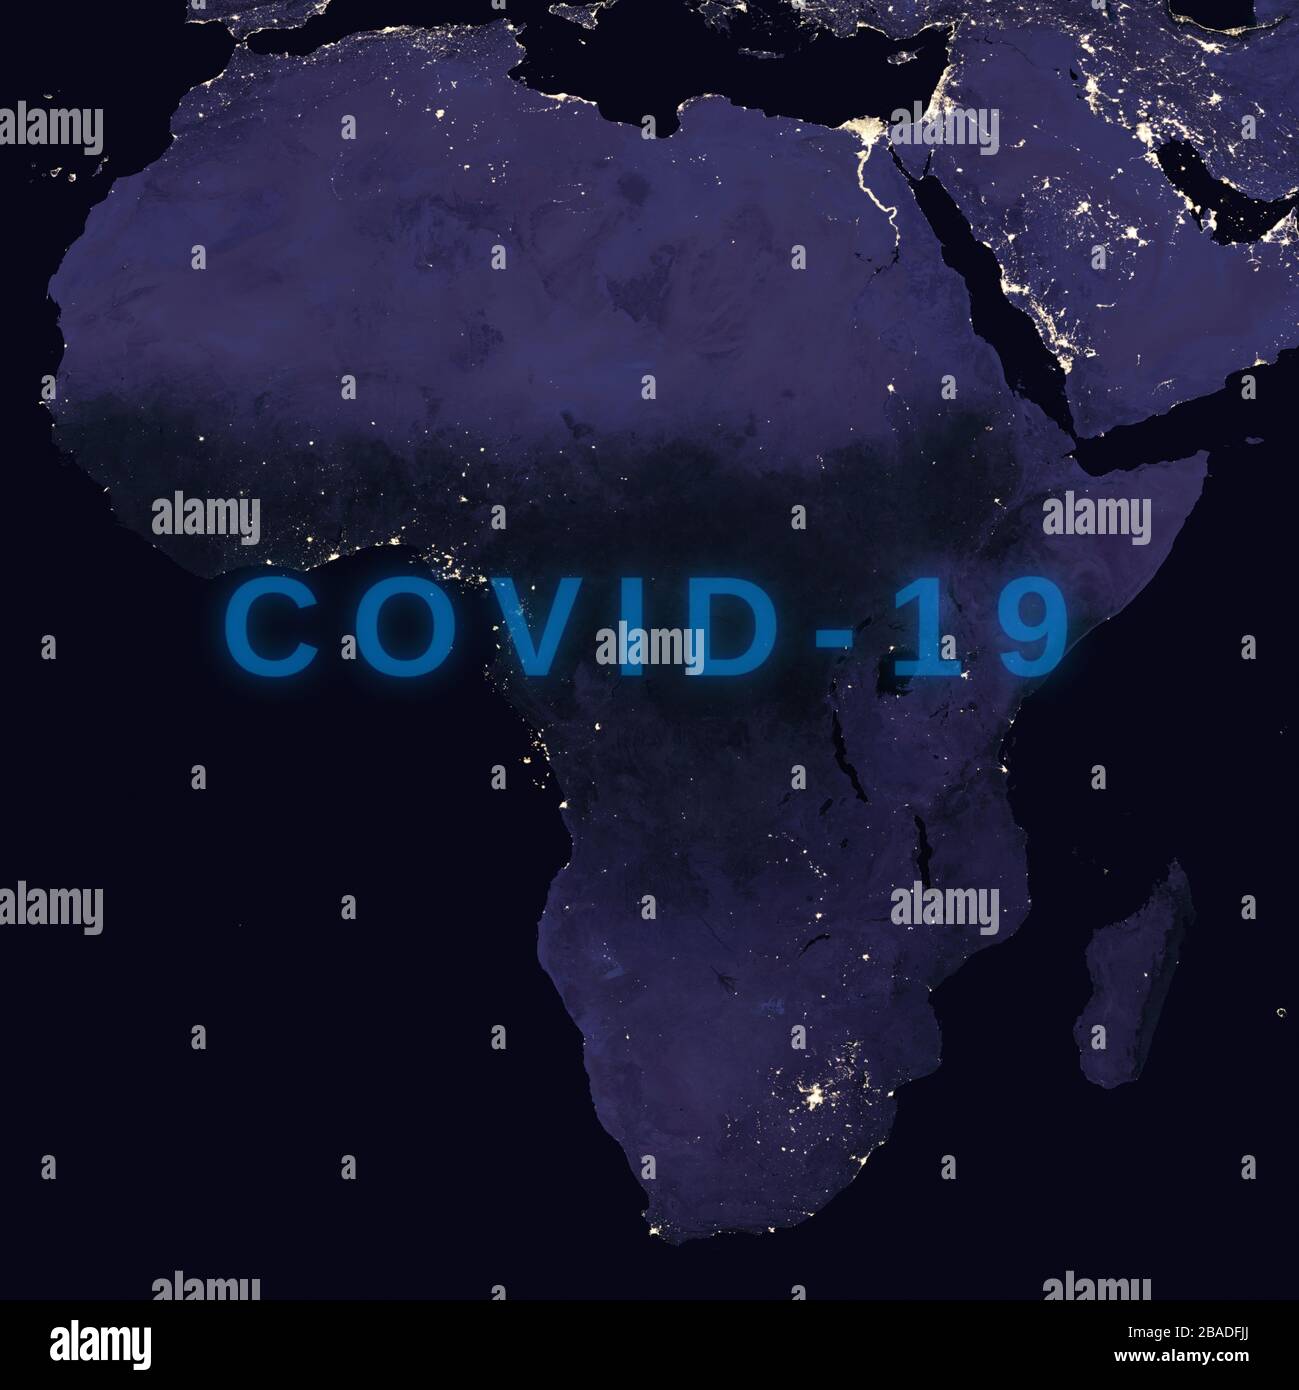 Coronavirus-Krankheit - glühendes COVID-19-Zeichen auf der Karte von Afrika - Elemente dieses Bildes, das von der NASA eingerichtet wurde Stockfoto